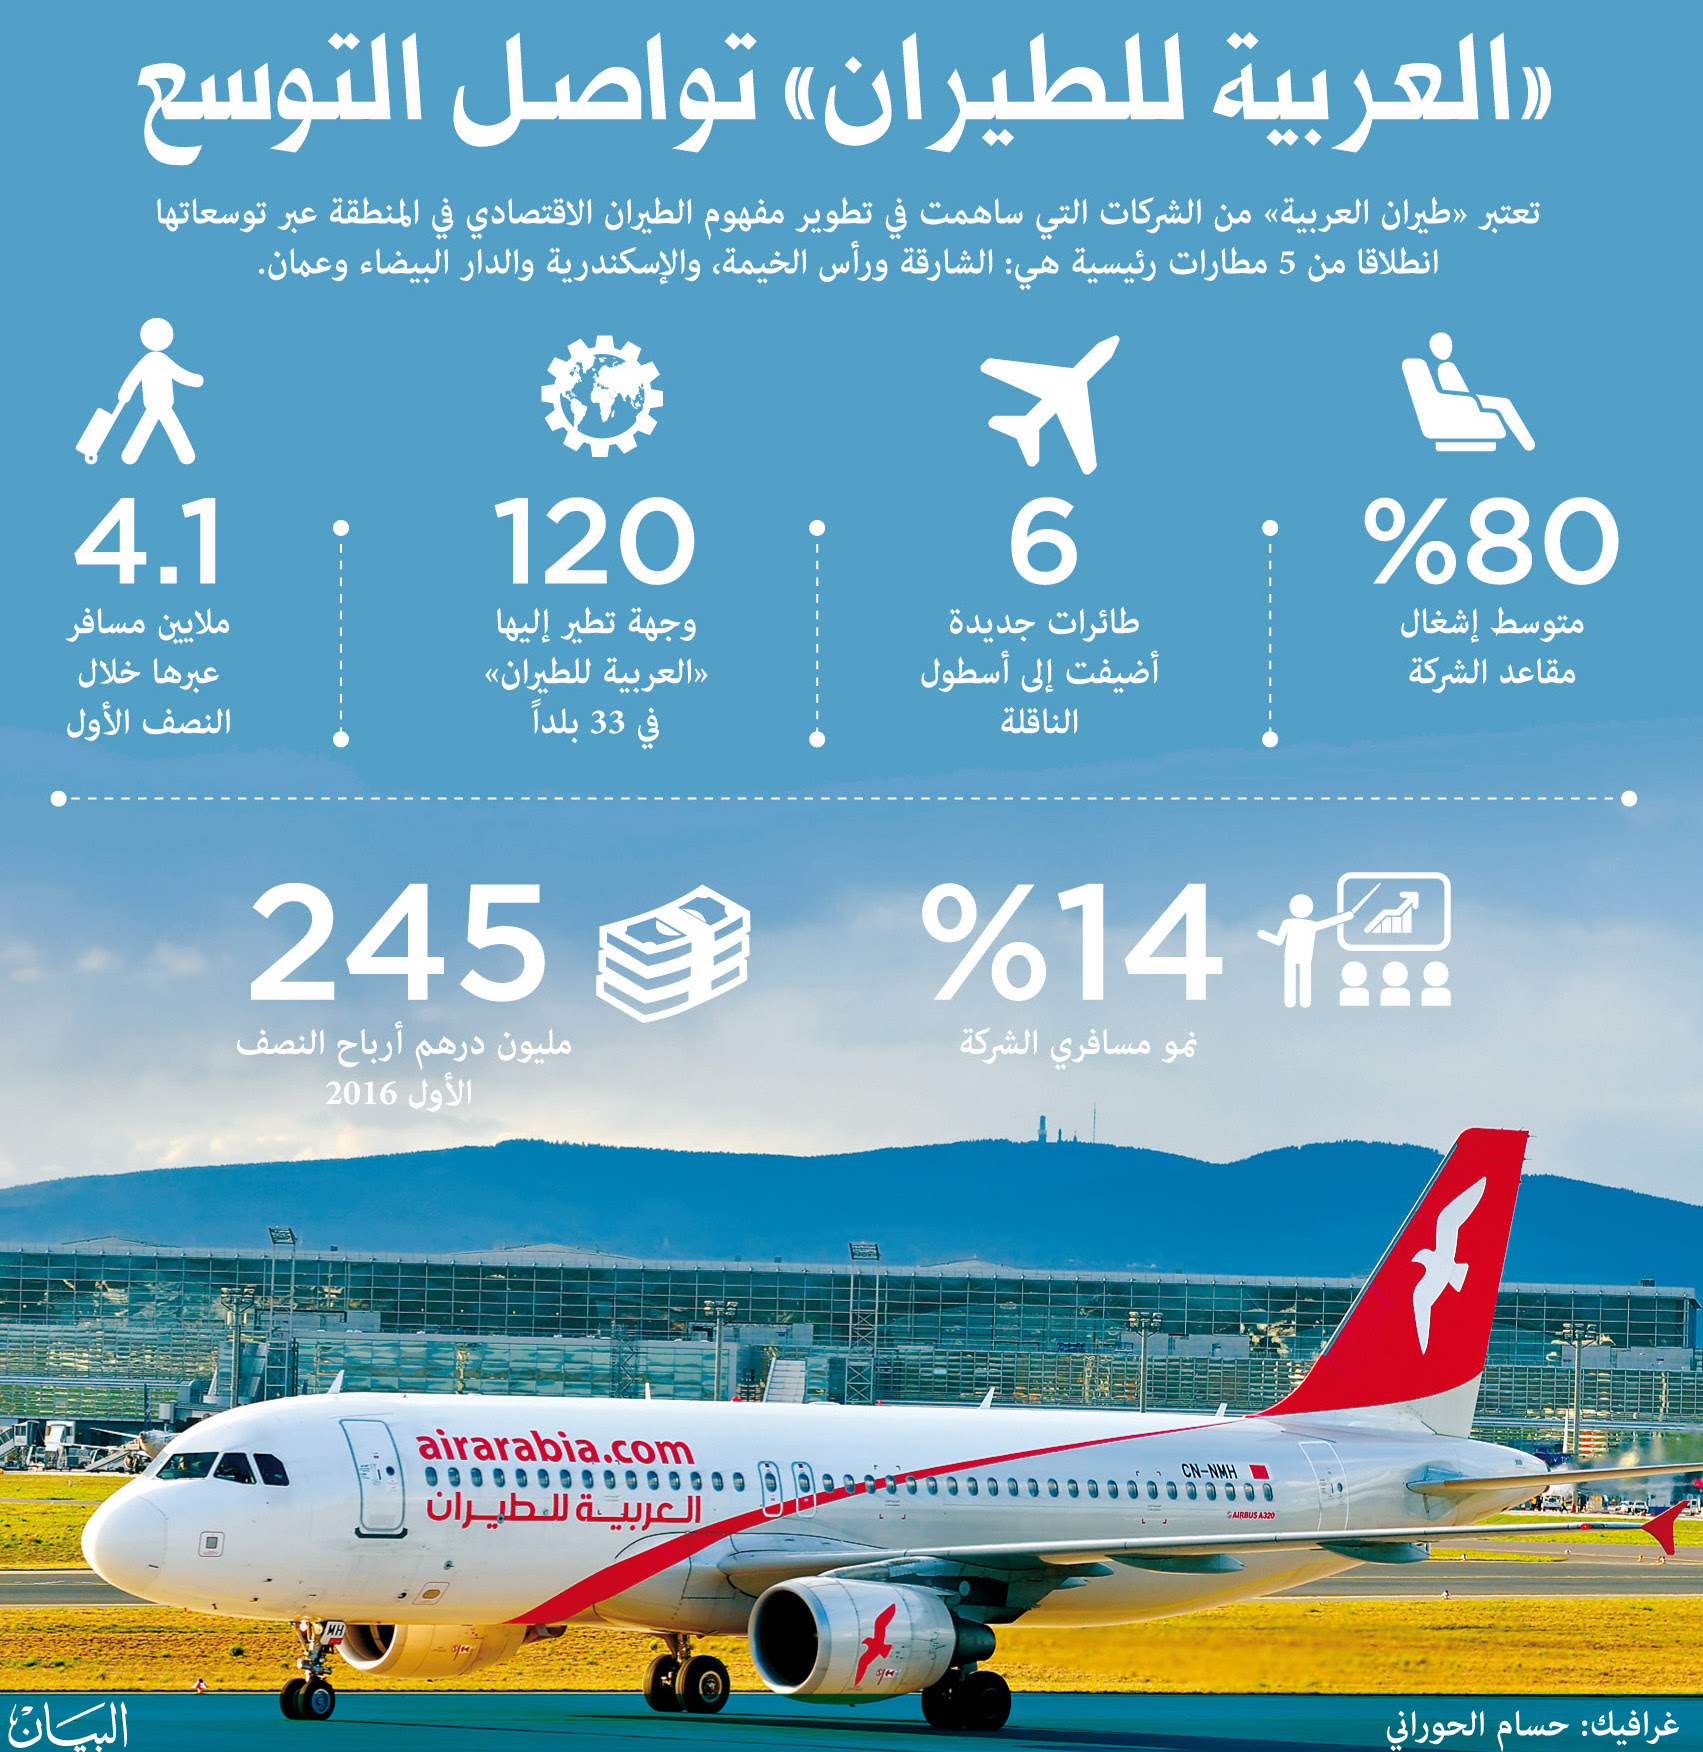 للطيران العربية رقم طيران